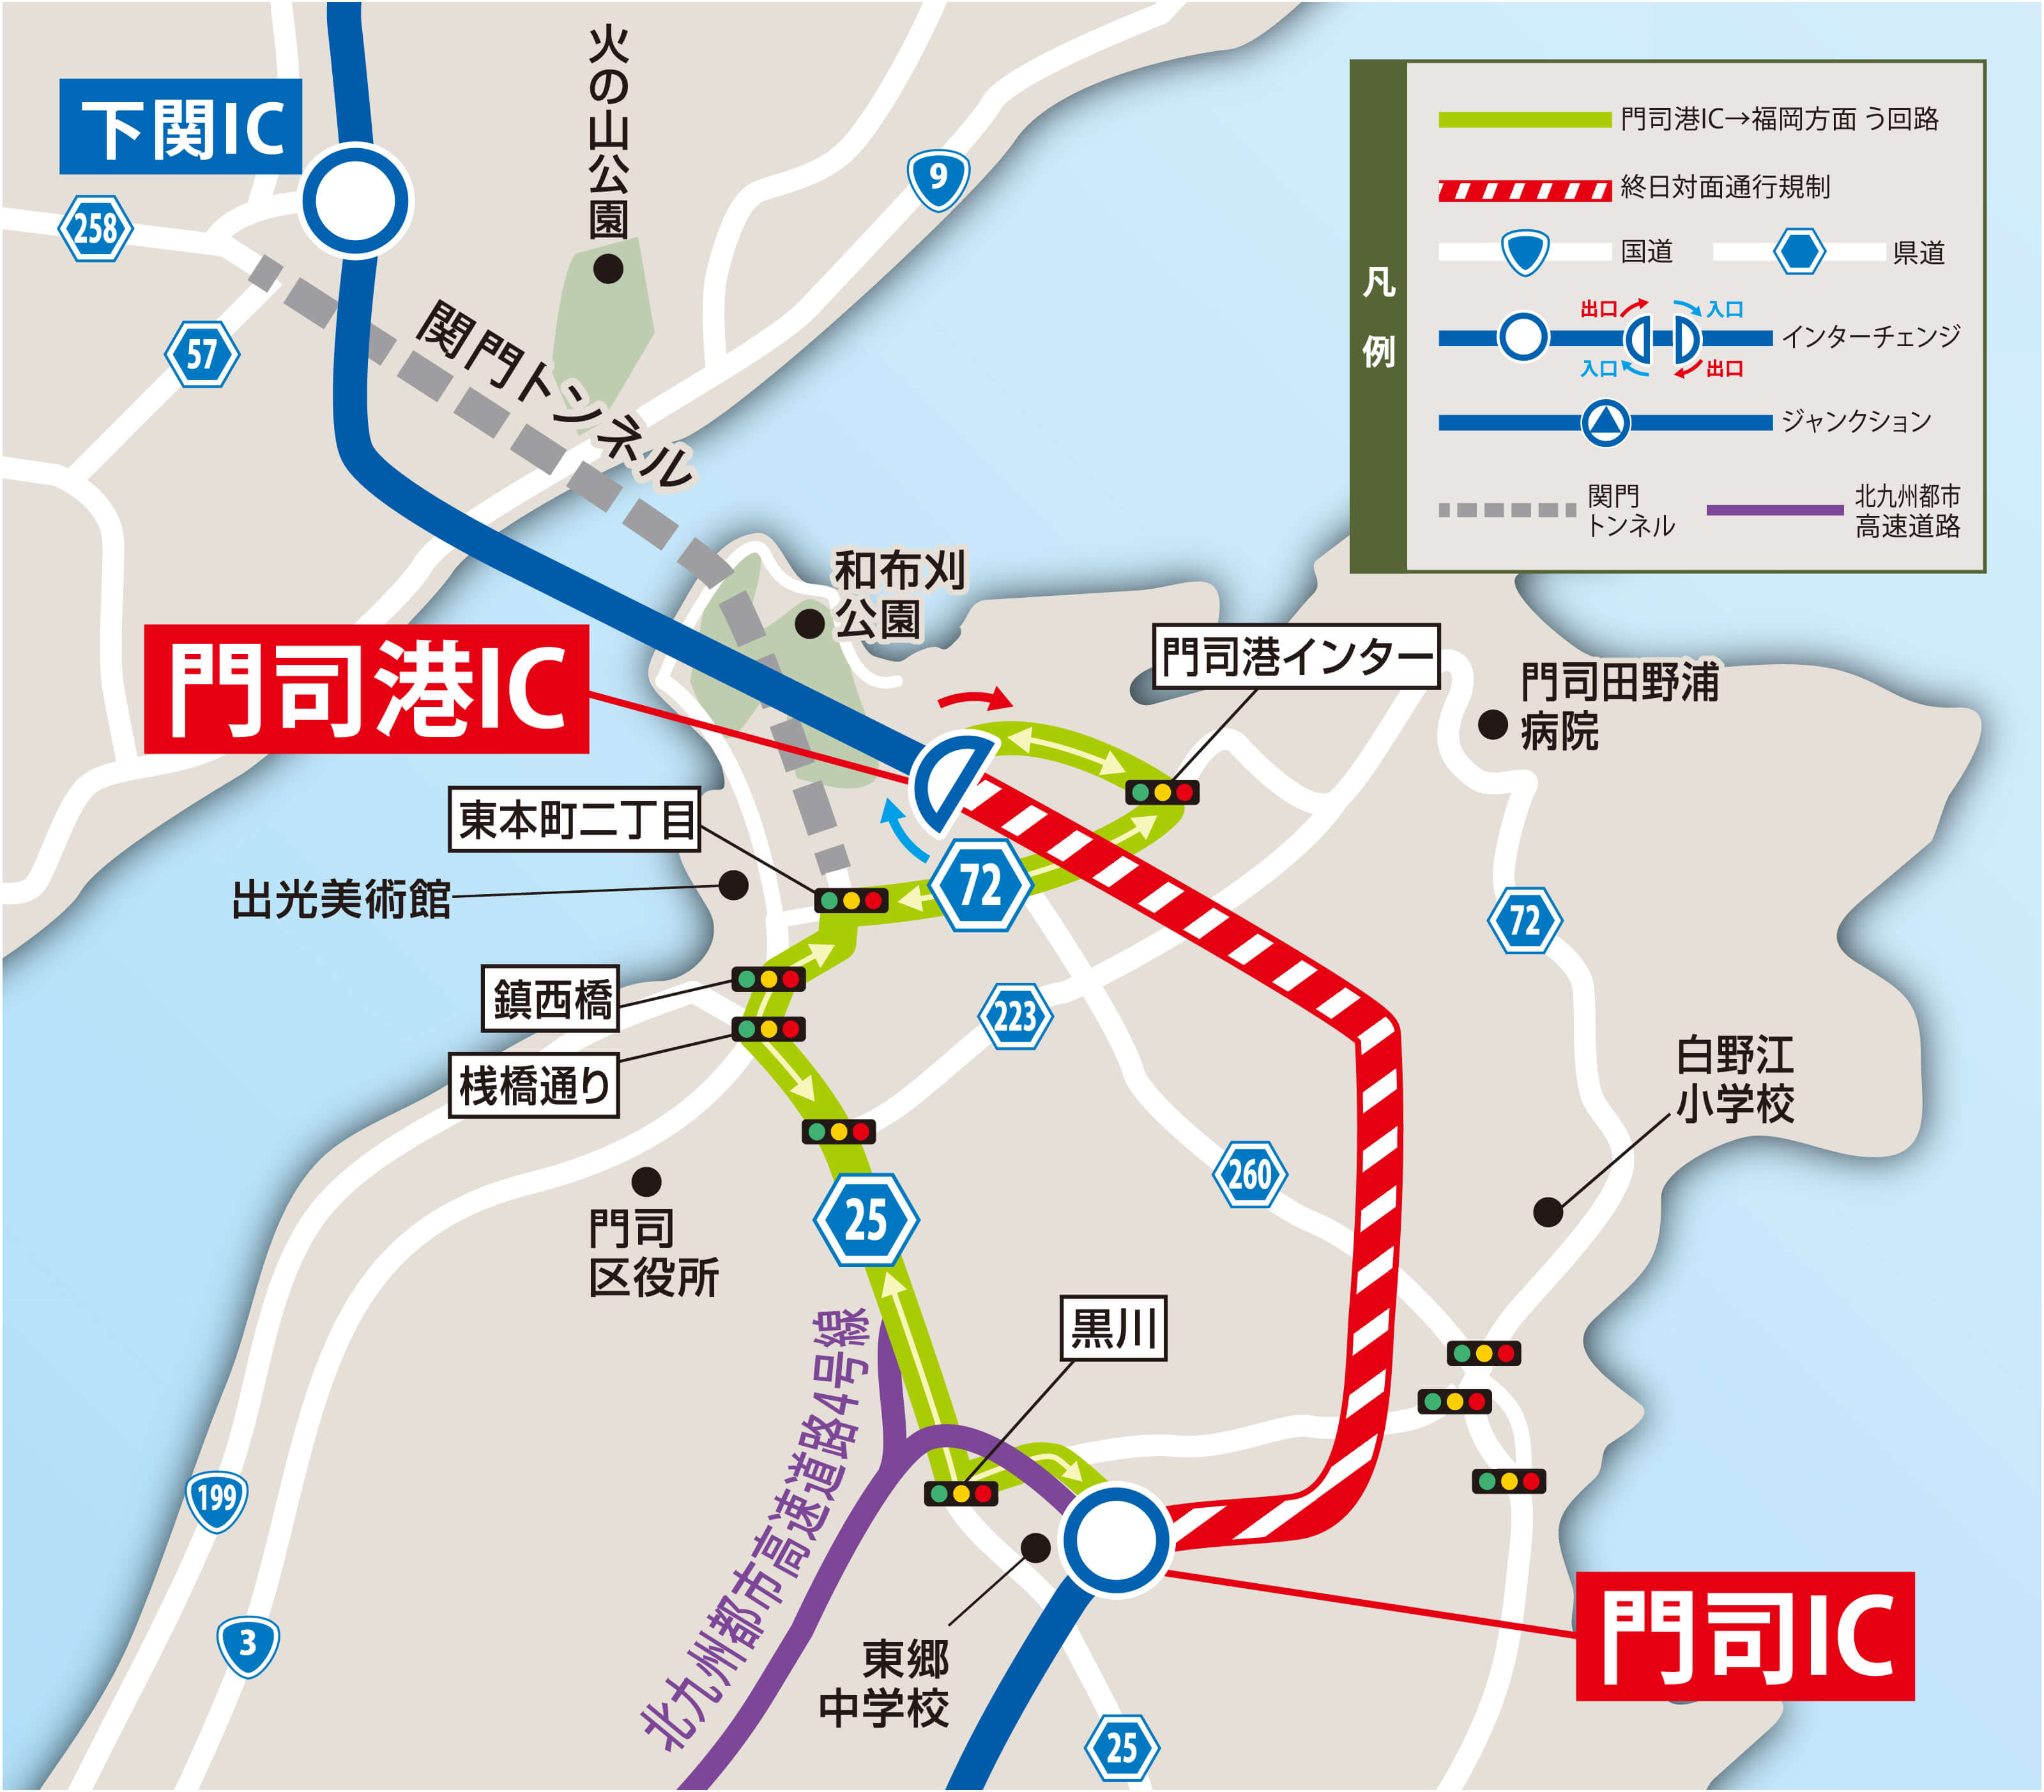 門司港IC→福岡方面 う回路